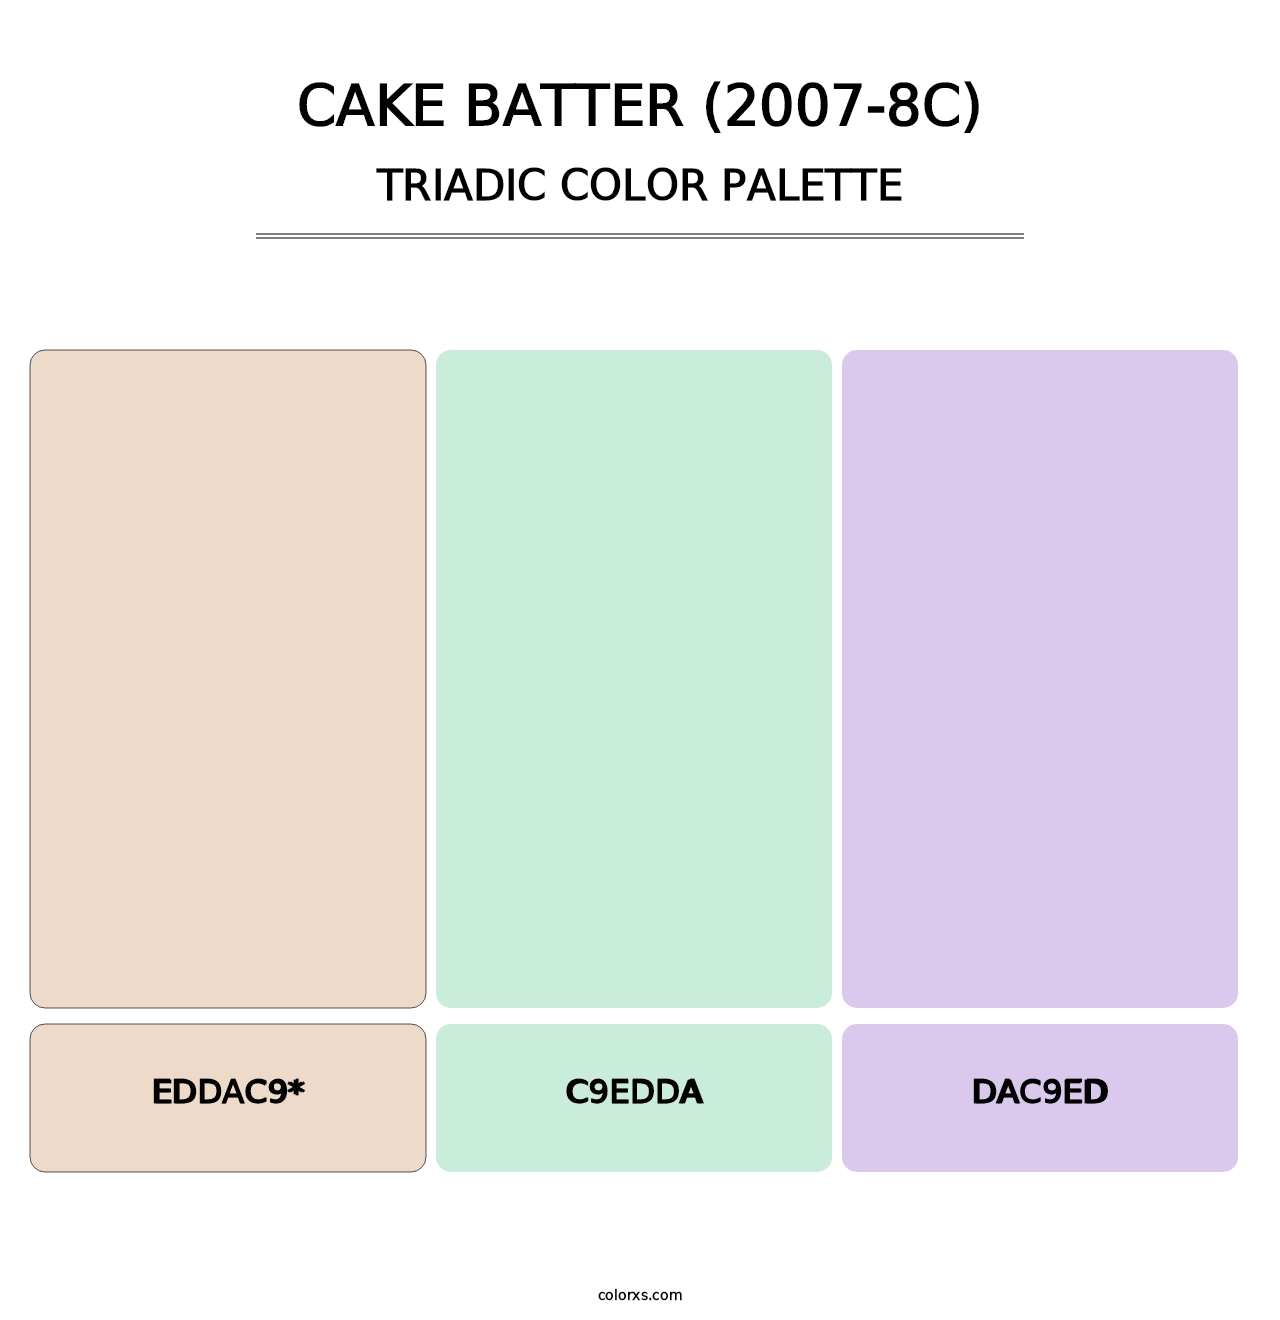 Cake Batter (2007-8C) - Triadic Color Palette